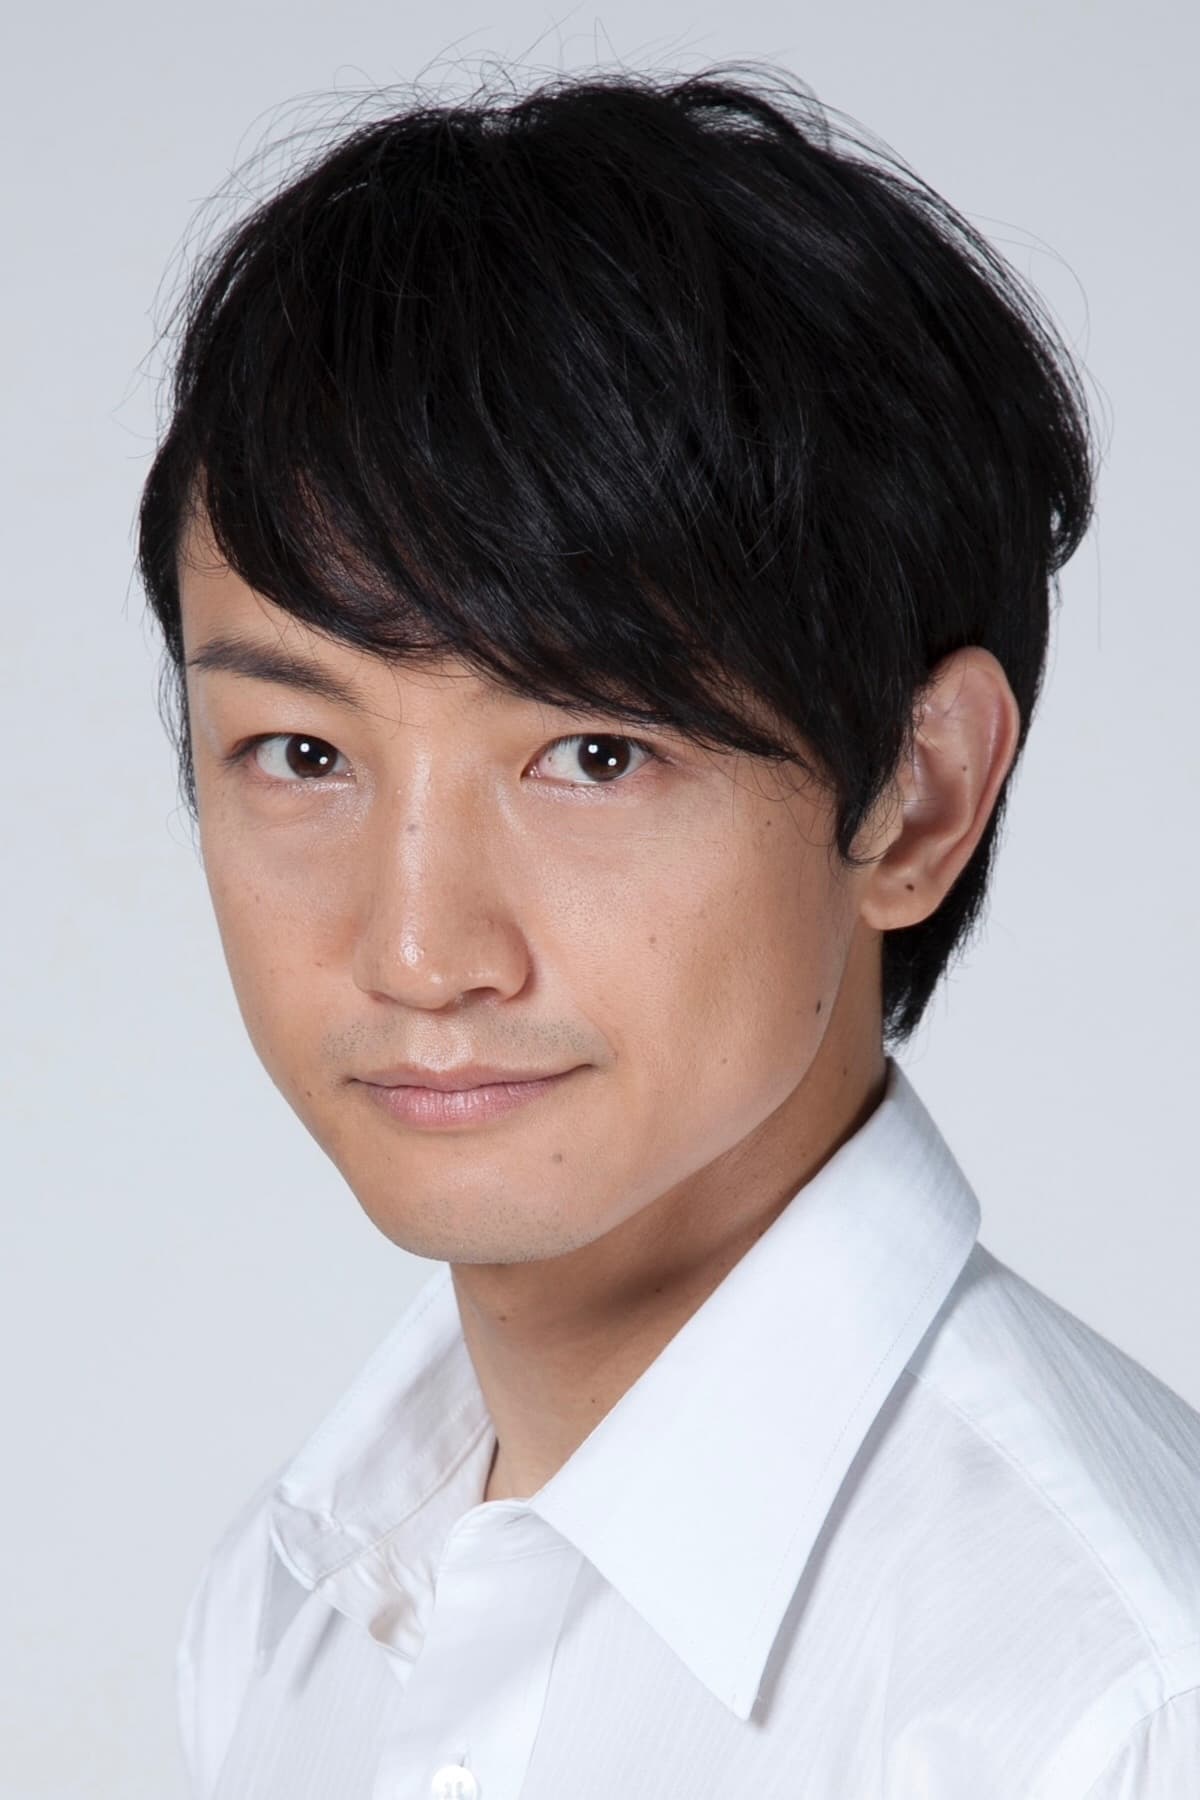 Takashi Nagayama